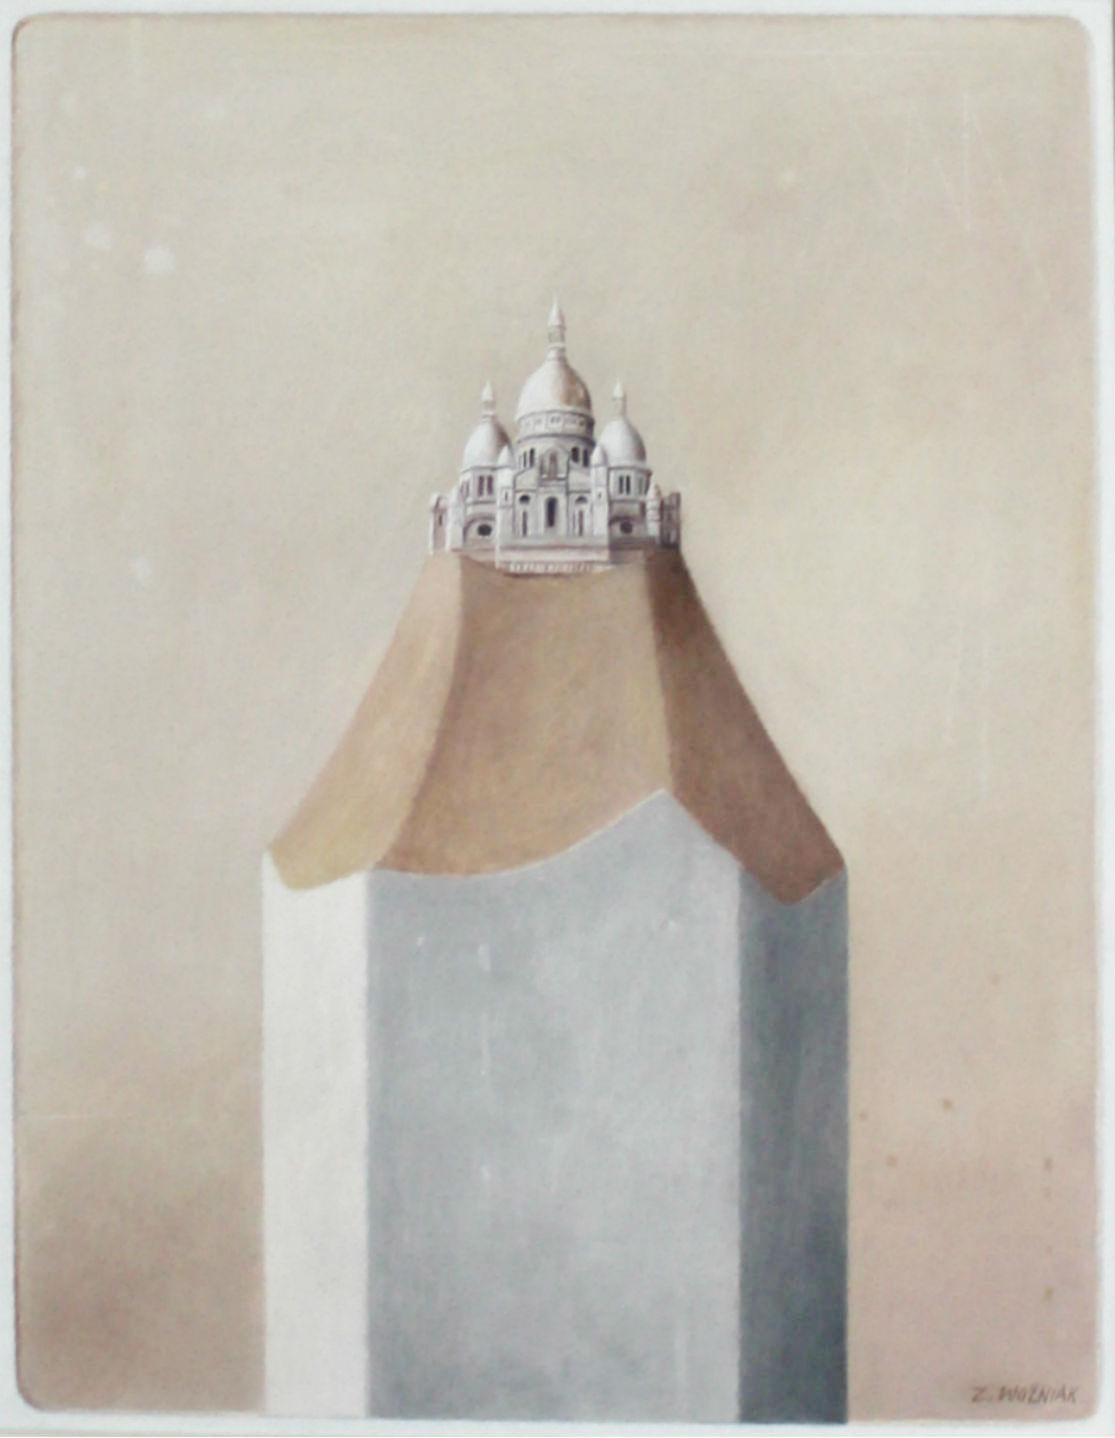 Zbigniew Wozniak Figurative Painting - Paris. Sacre-ceur - Contemporary Oil Painting, Surrealism, Architecture